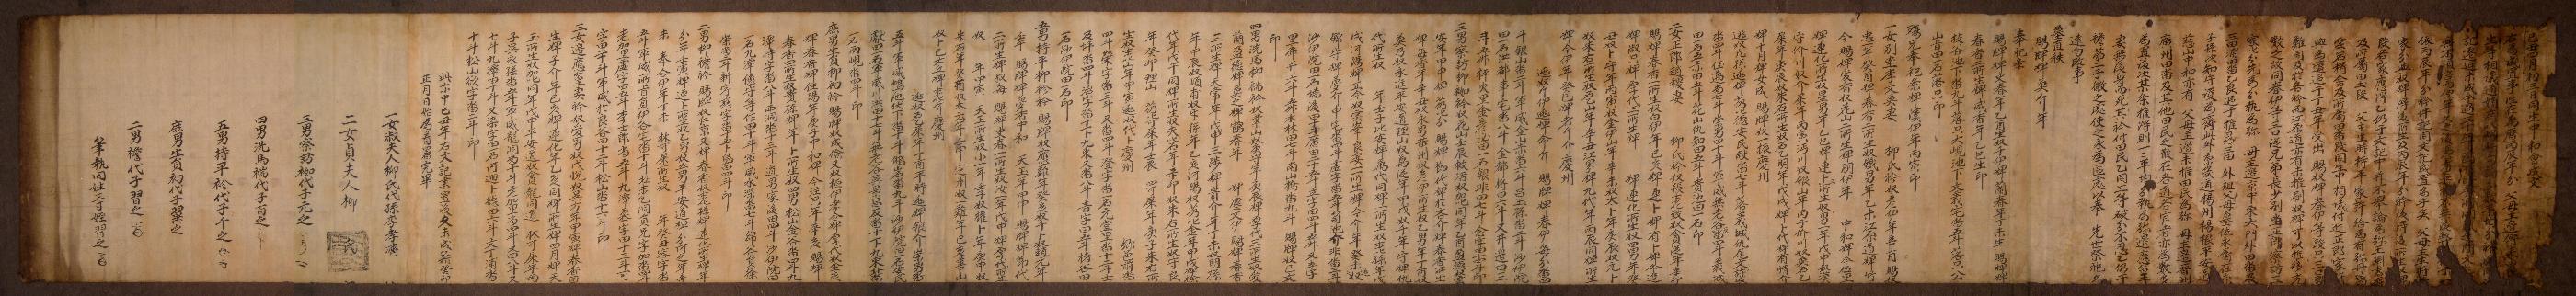 류성룡(柳成龍) 적서(嫡庶) 8자녀가 1649년에 작성한 화회문기